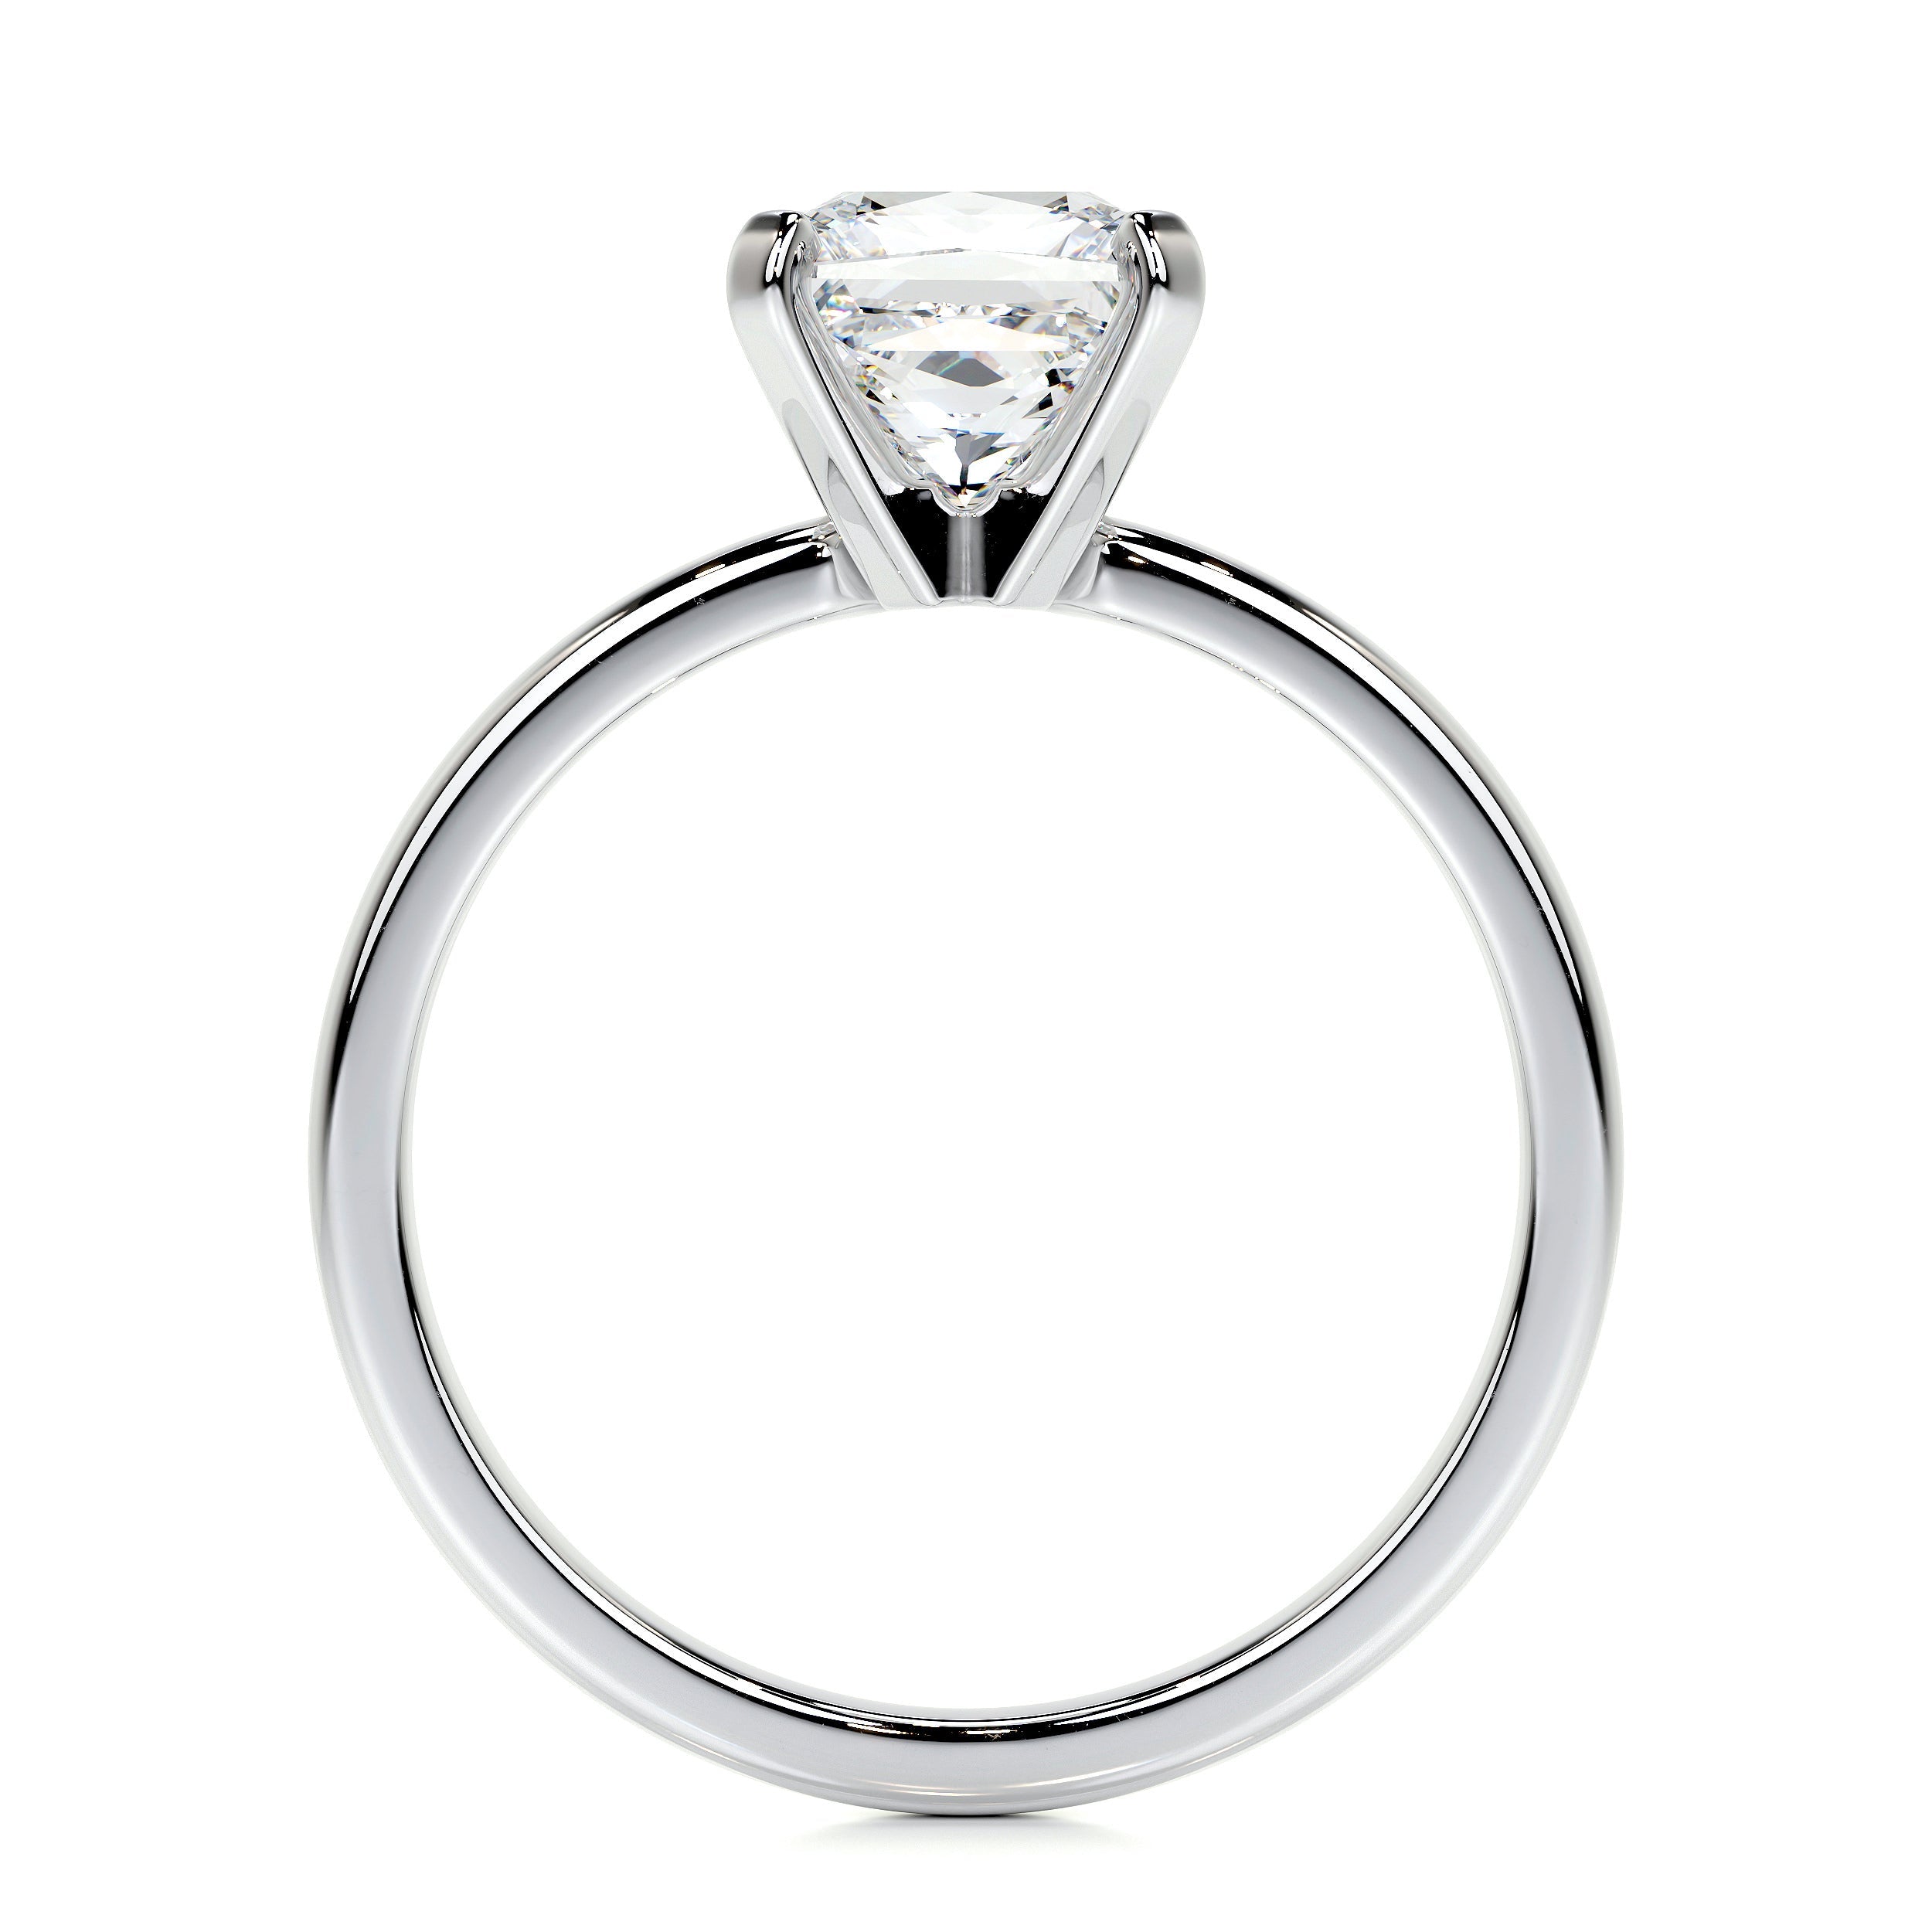 Isabelle Lab Grown Diamond Ring   (1.5 Carat) -14K White Gold